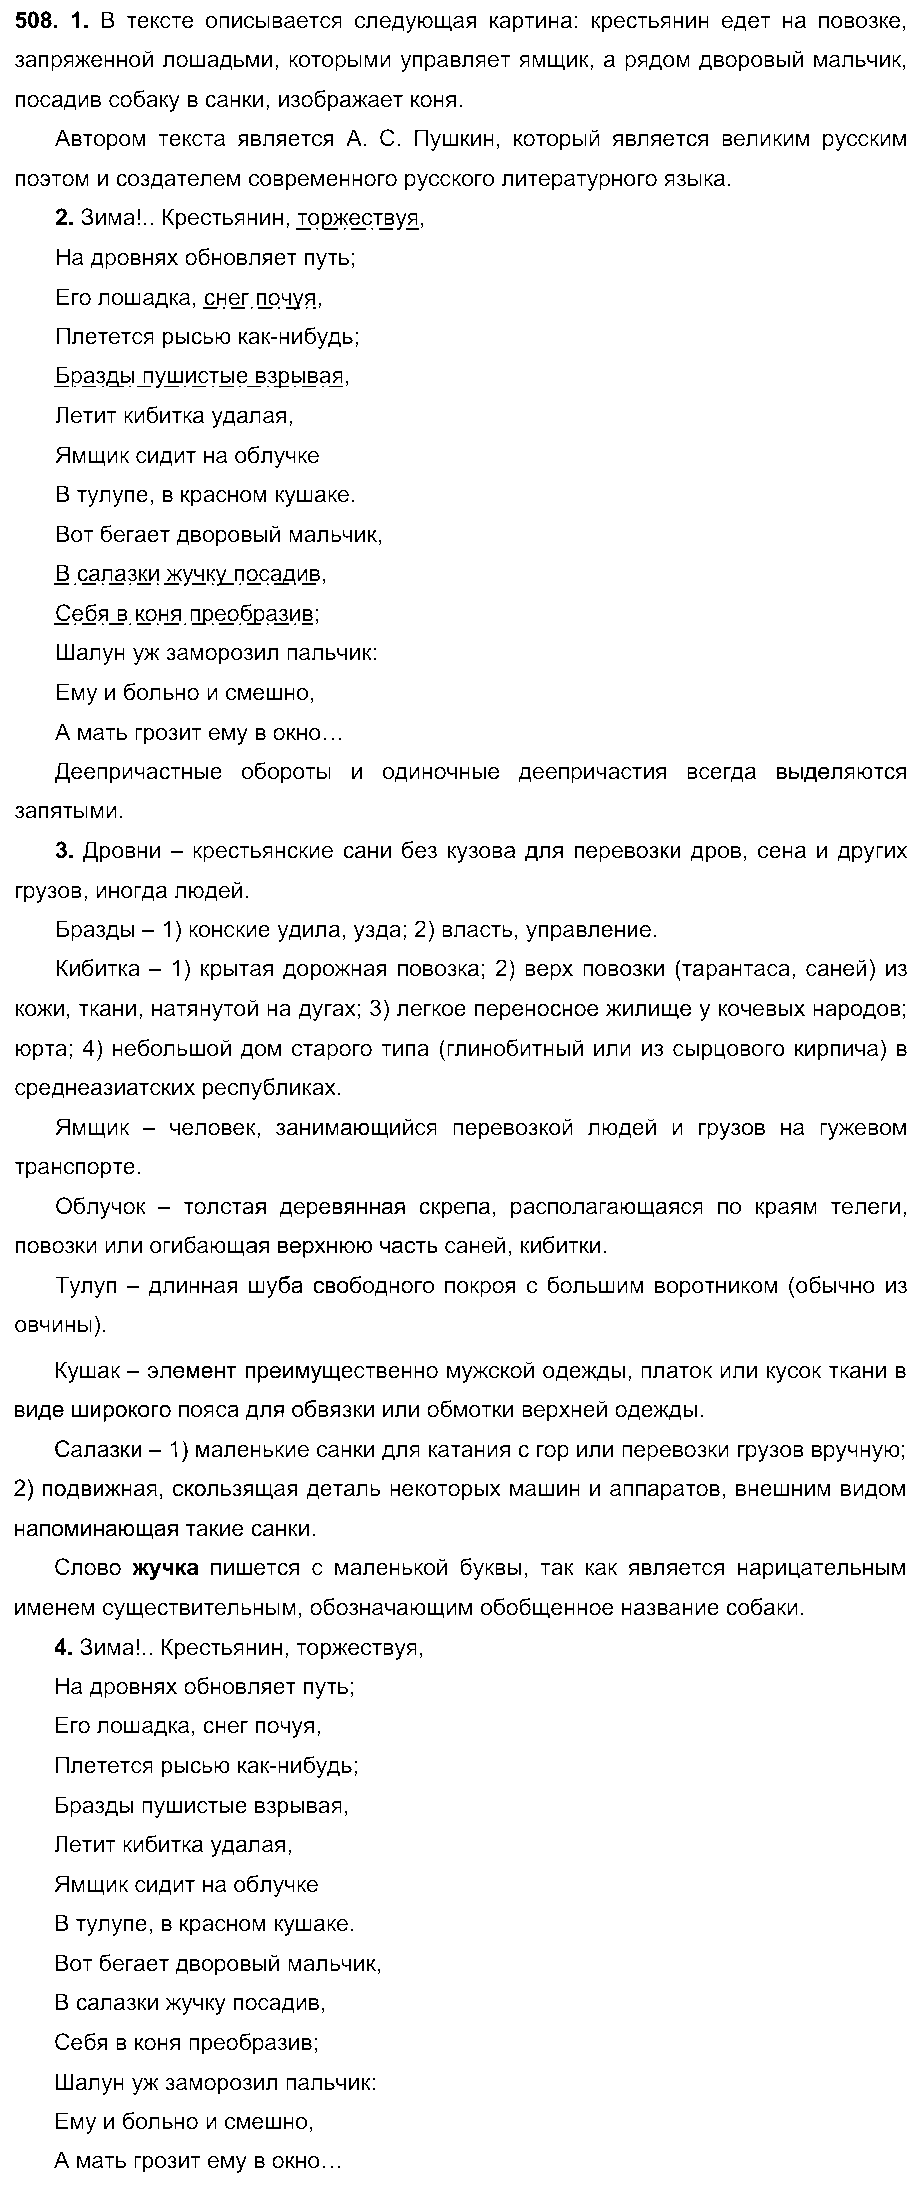 ГДЗ Русский язык 6 класс - 508